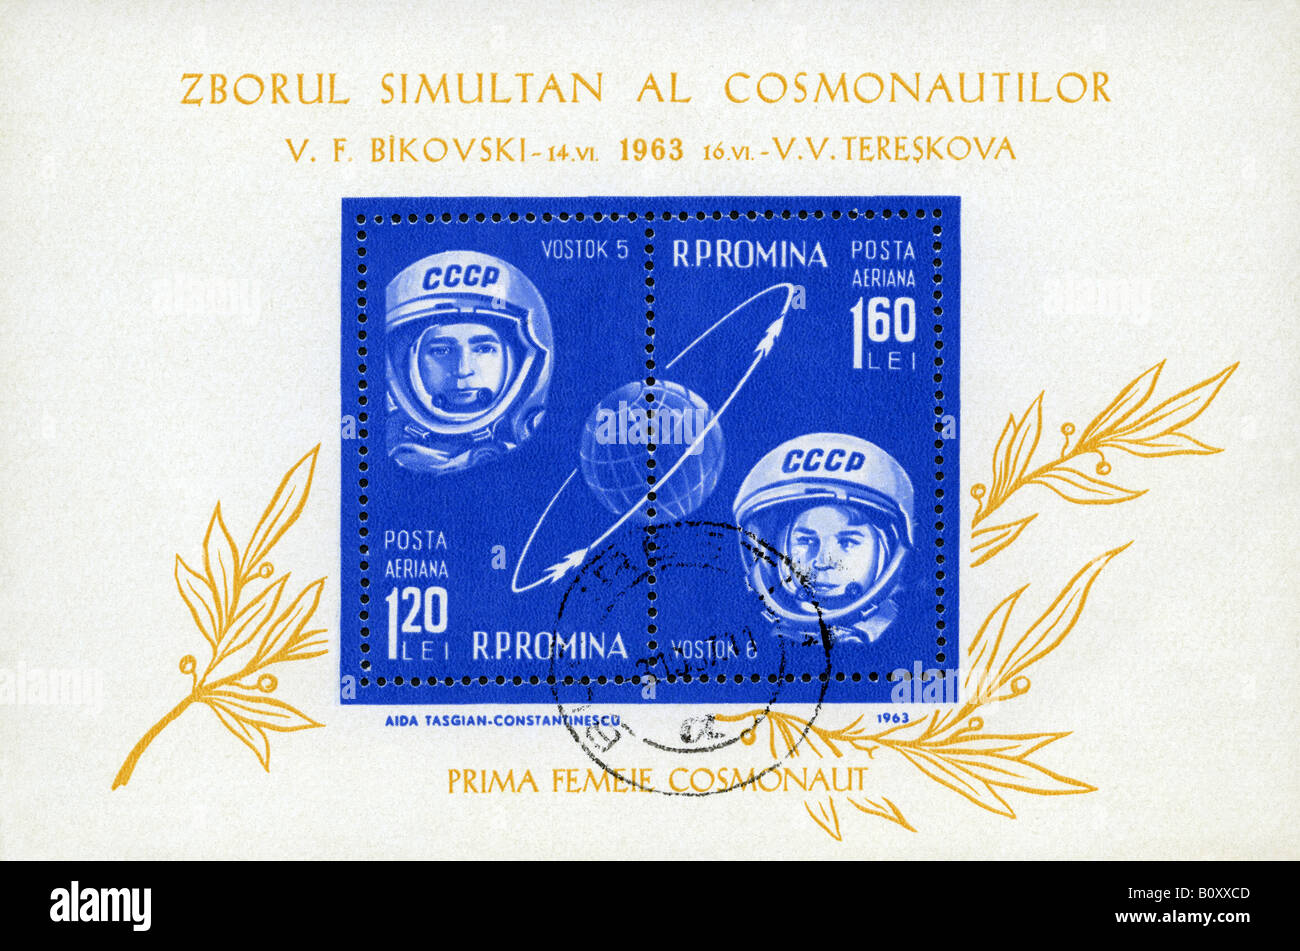 Rumania sello hoja miniatura representando a Valentina Tereshkova, primera mujer cosmonauta ruso a bordo del Vostok 6 en junio de 1963. Foto de stock